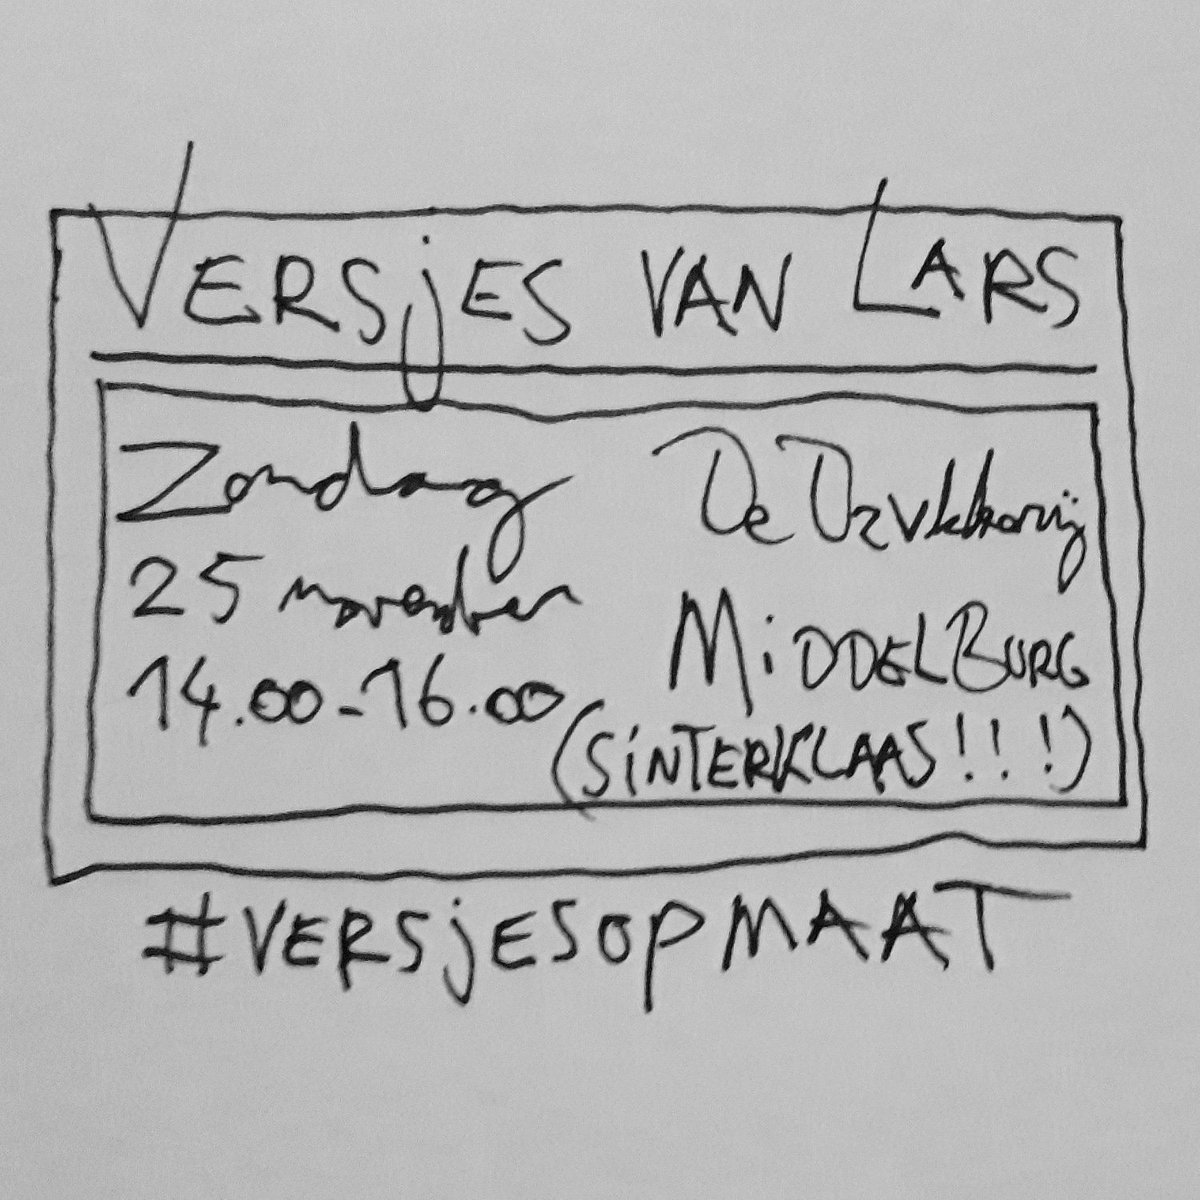 Niet vergeten! Morgen bij @Drvkkery te Middelburg #versjesopmaat, de Sinterklaas-versie. Zie je daar! #versjesvanLars #heblief #elkedageenzoen